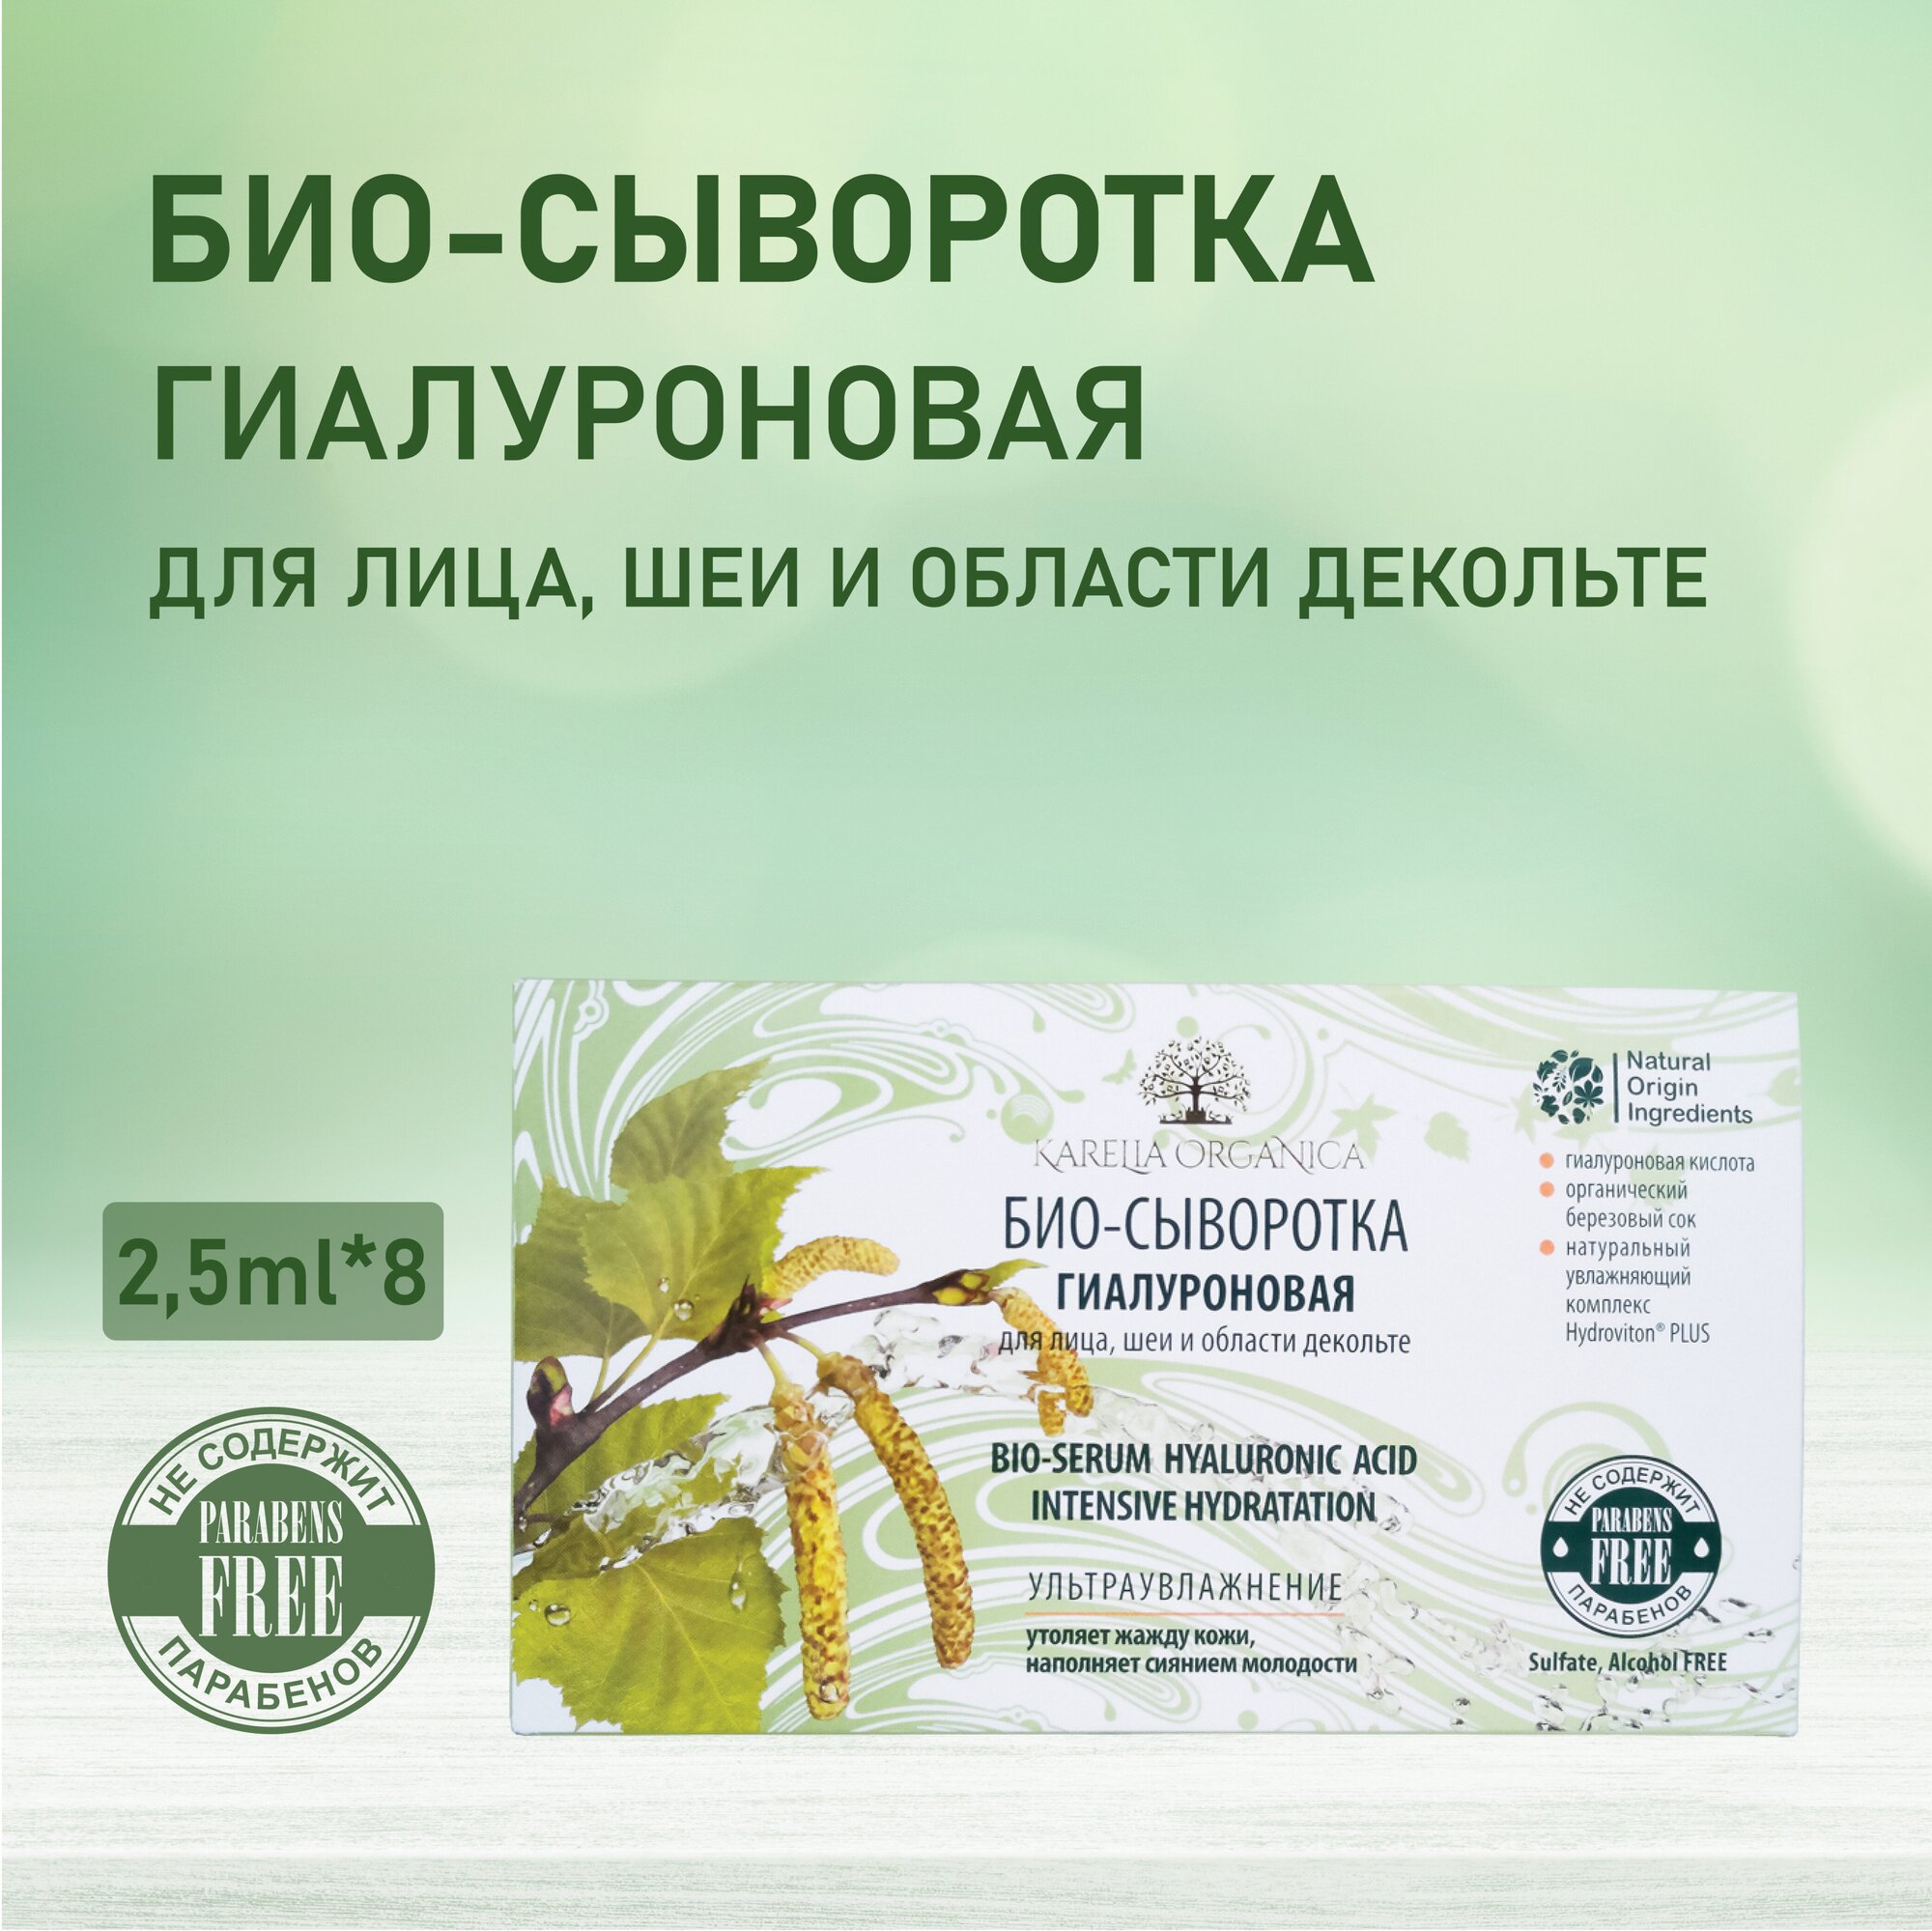 Ампулы «Karelia Organica» Био-сыворотка Гиалуроновая для лица, шеи и области декольте, 2,5*8